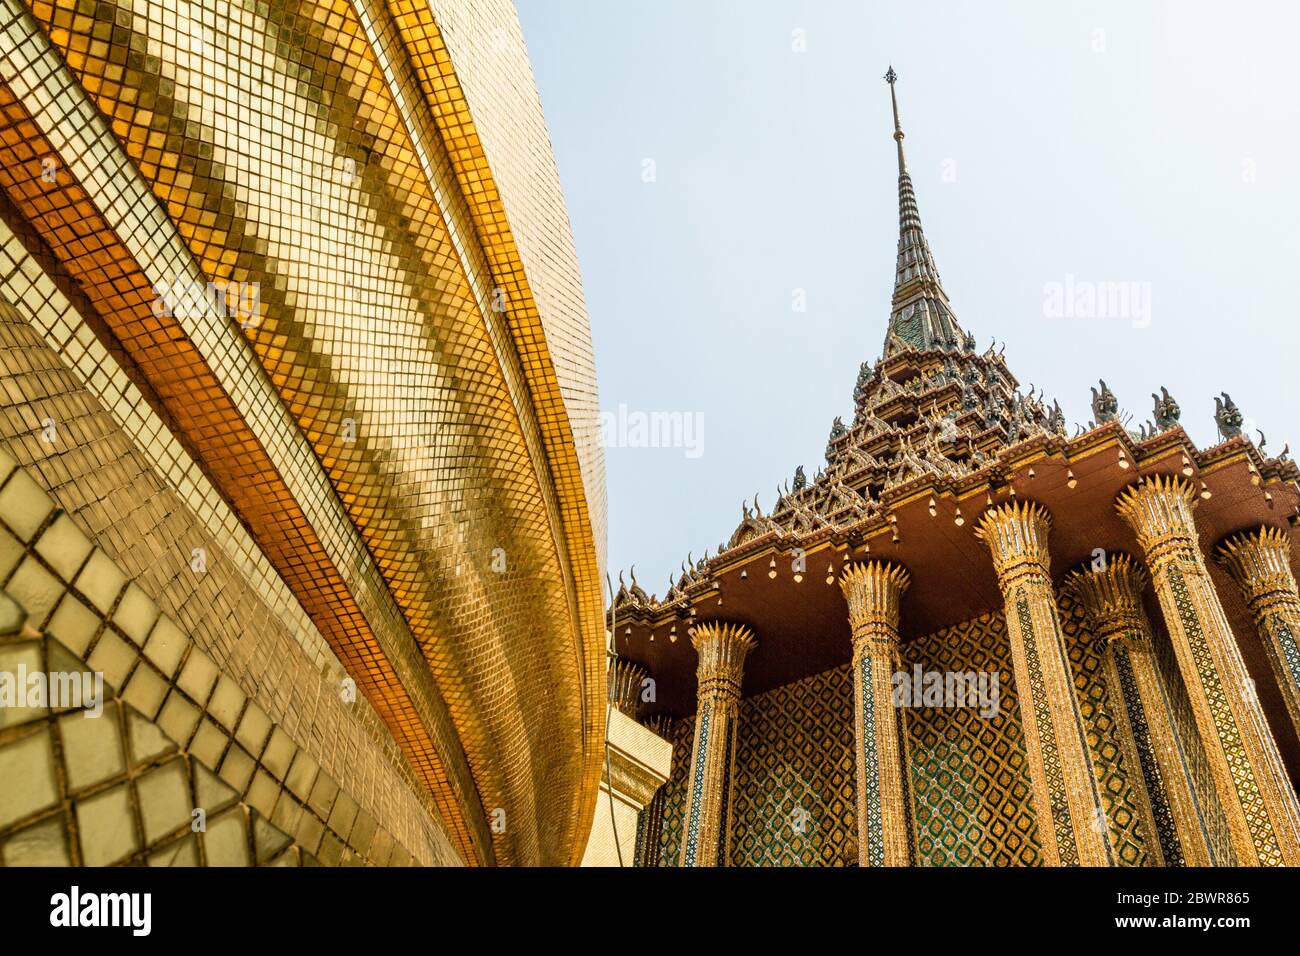 Bangkok, Thailand - 12. Februar 2013. Fassade des smaragdgrünen buddha-Palastes, Wat Phra Kaew. Seine Wände sind voll von goldenen Mosaiken, die Reichtum darstellen Stockfoto